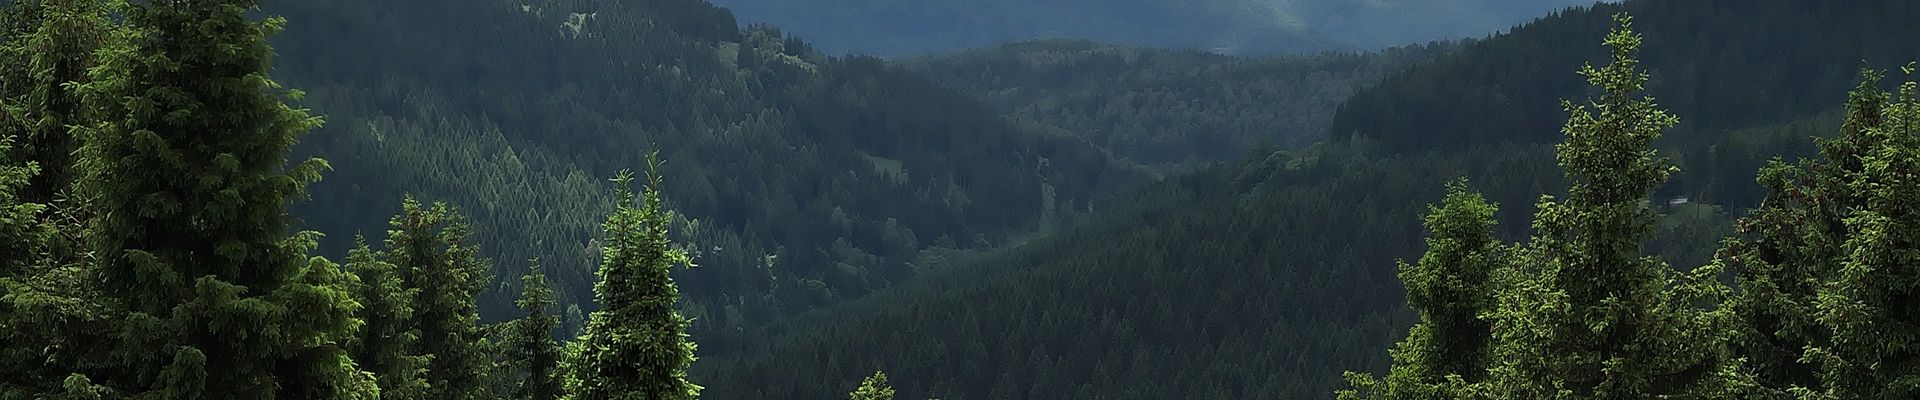 AWO Sano Thüringer Wald von einer Drone fotografiert